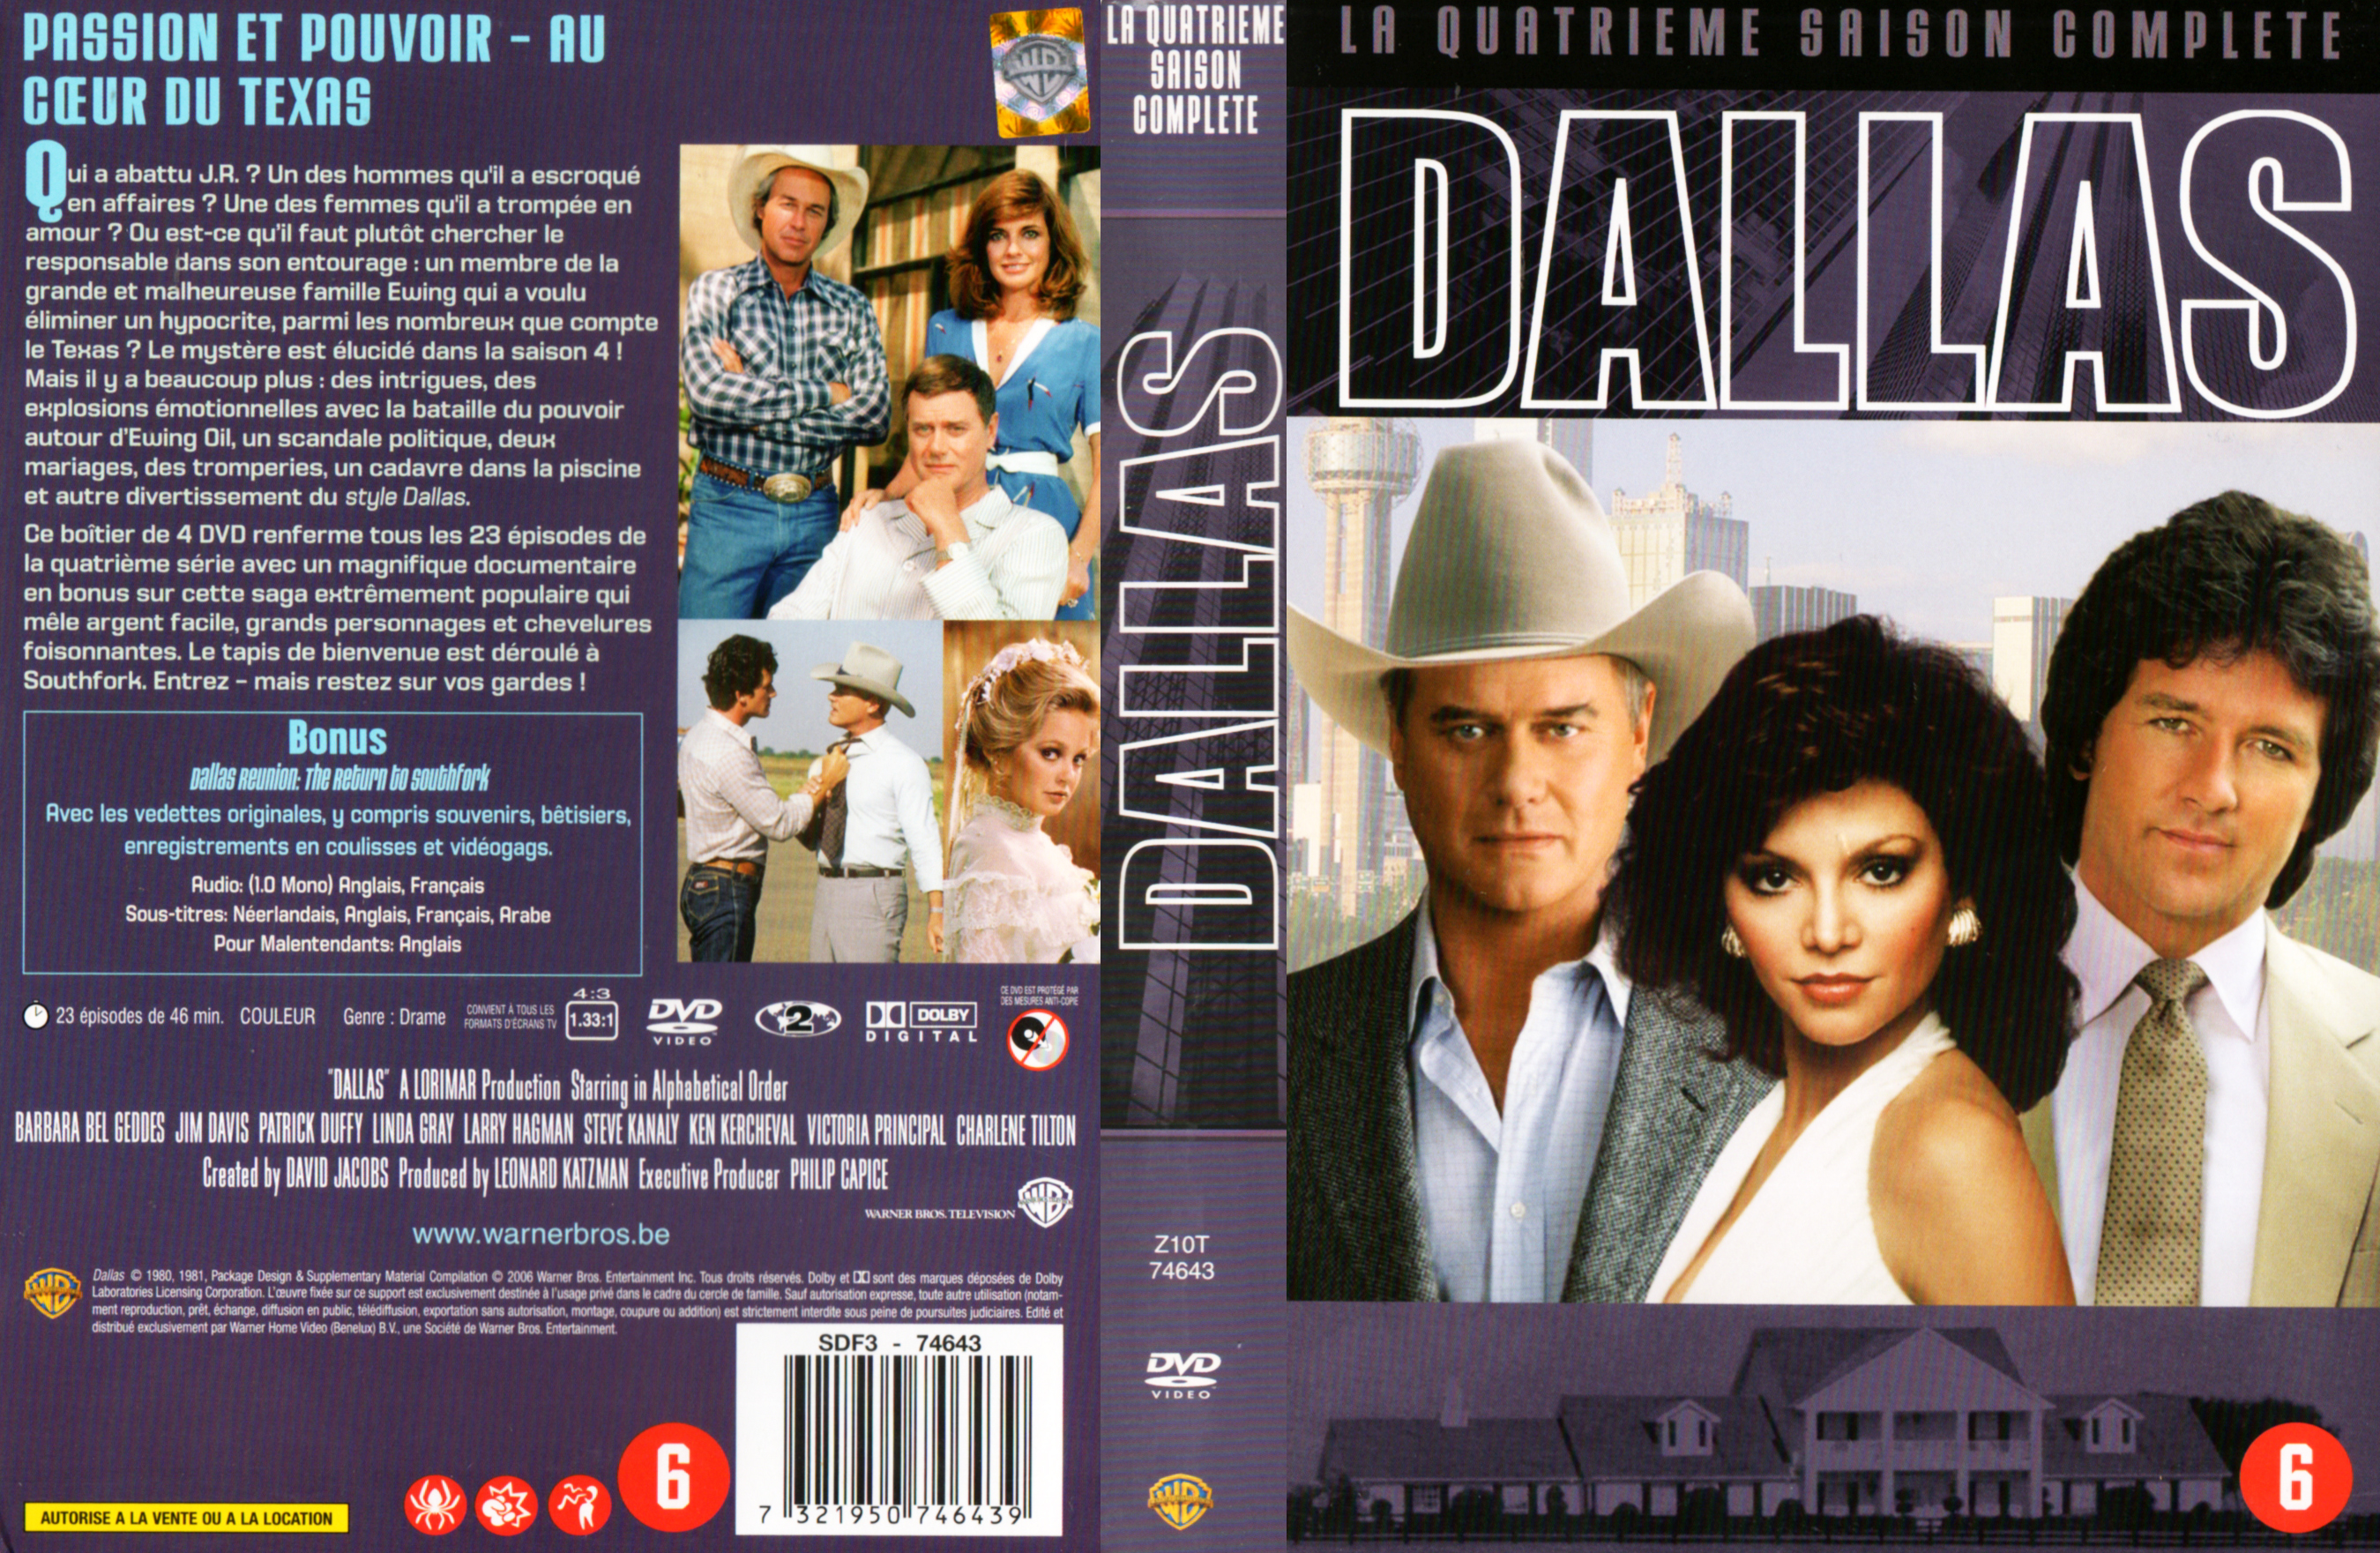 Jaquette DVD Dallas Saison 4 COFFRET